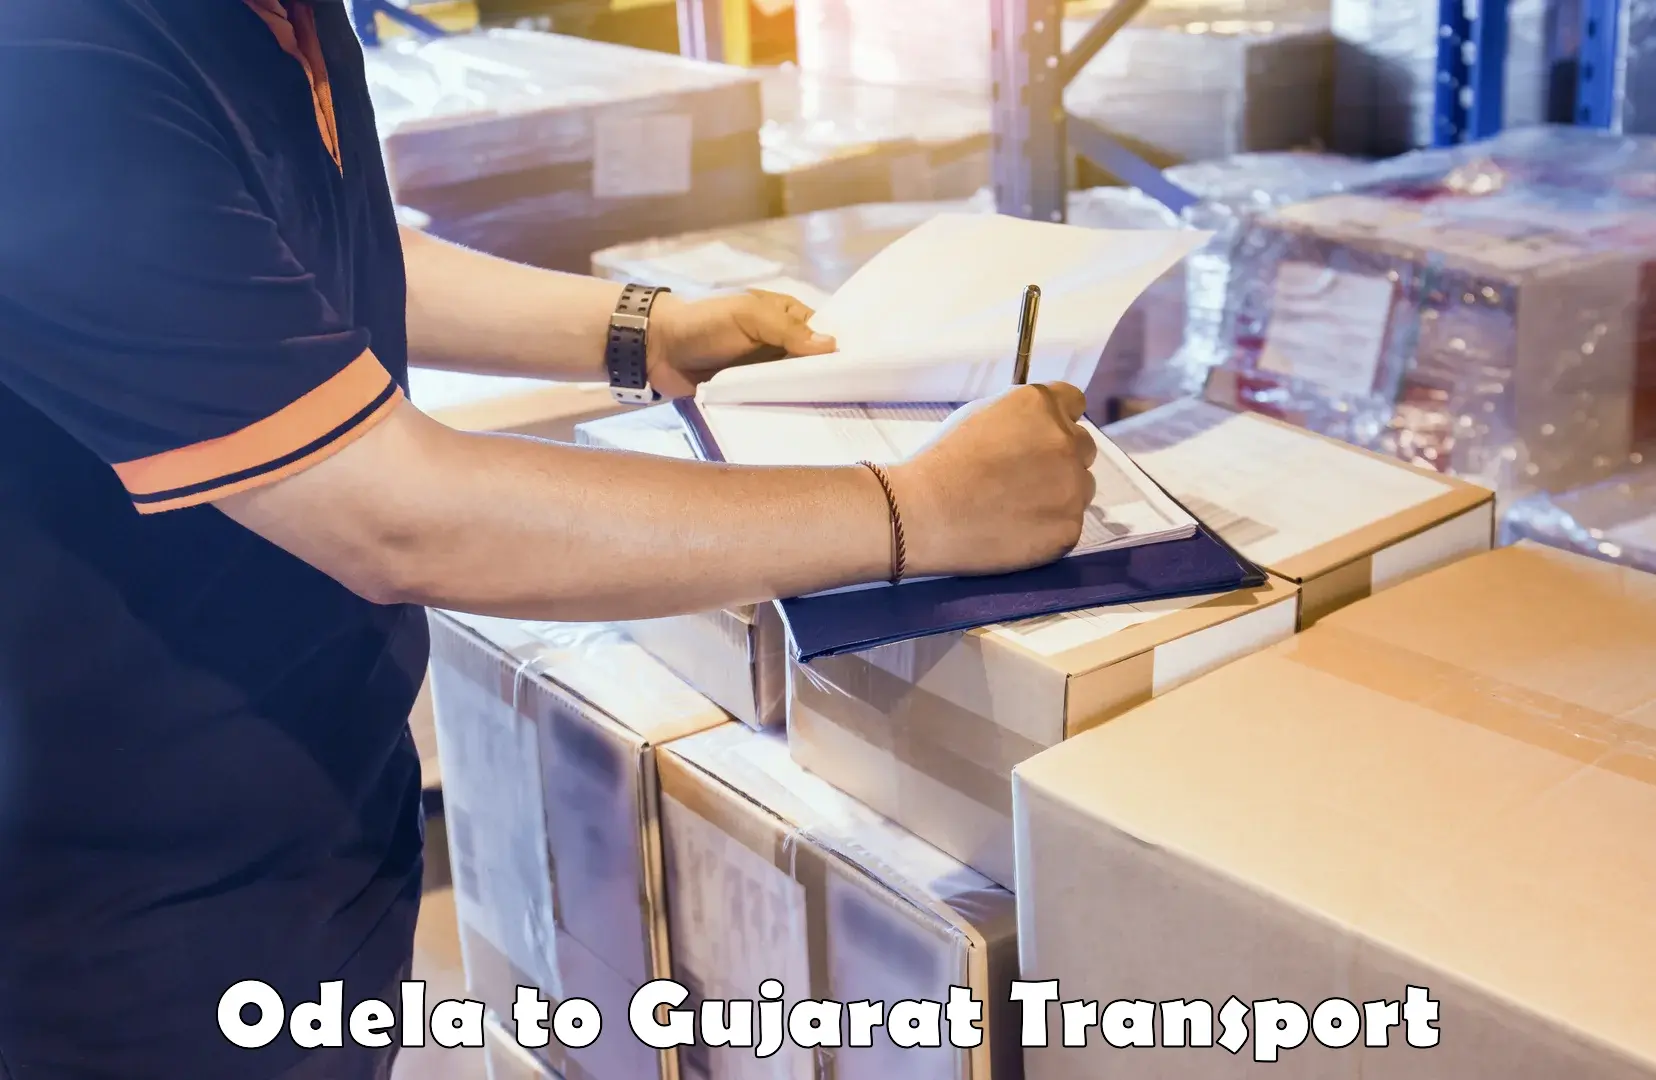 Transport services Odela to Surat